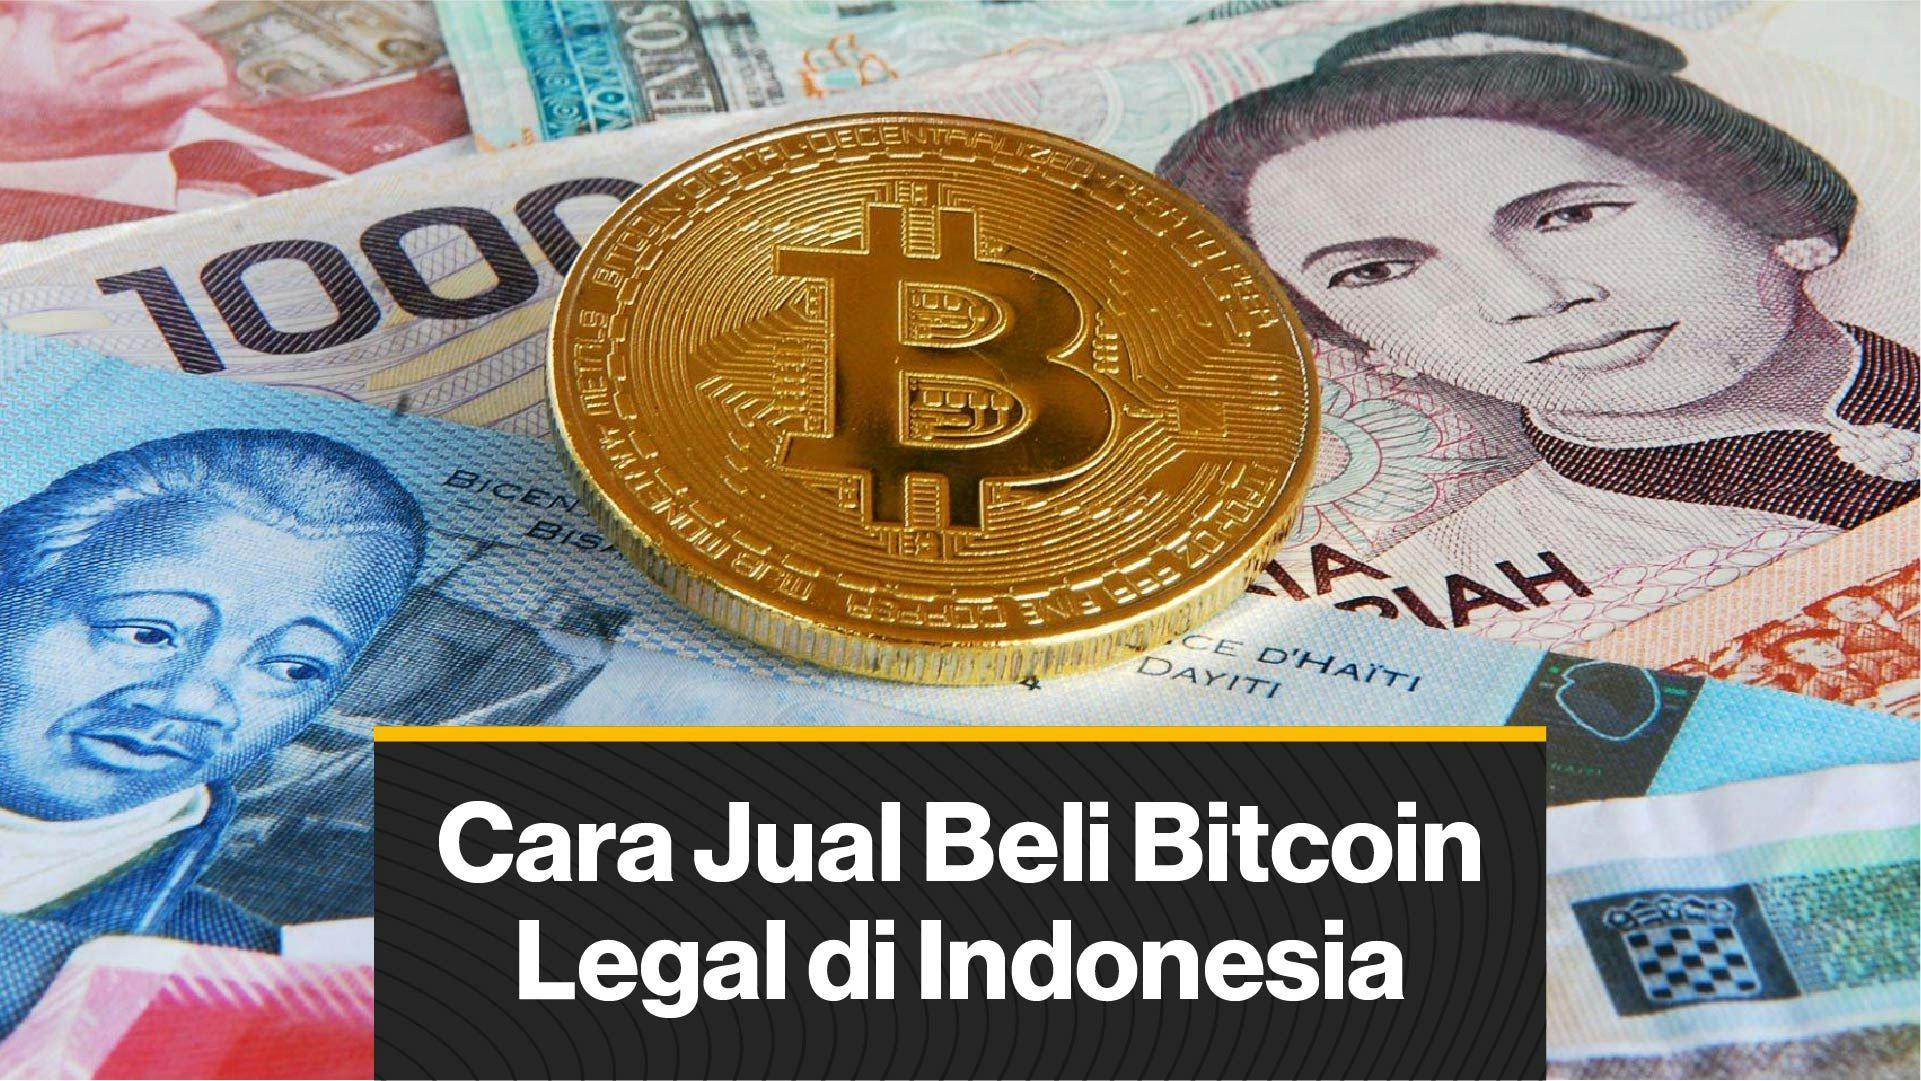 Cara Jual Beli Bitcoin Secara Legal di Indonesia (Coindesk Indonesia)